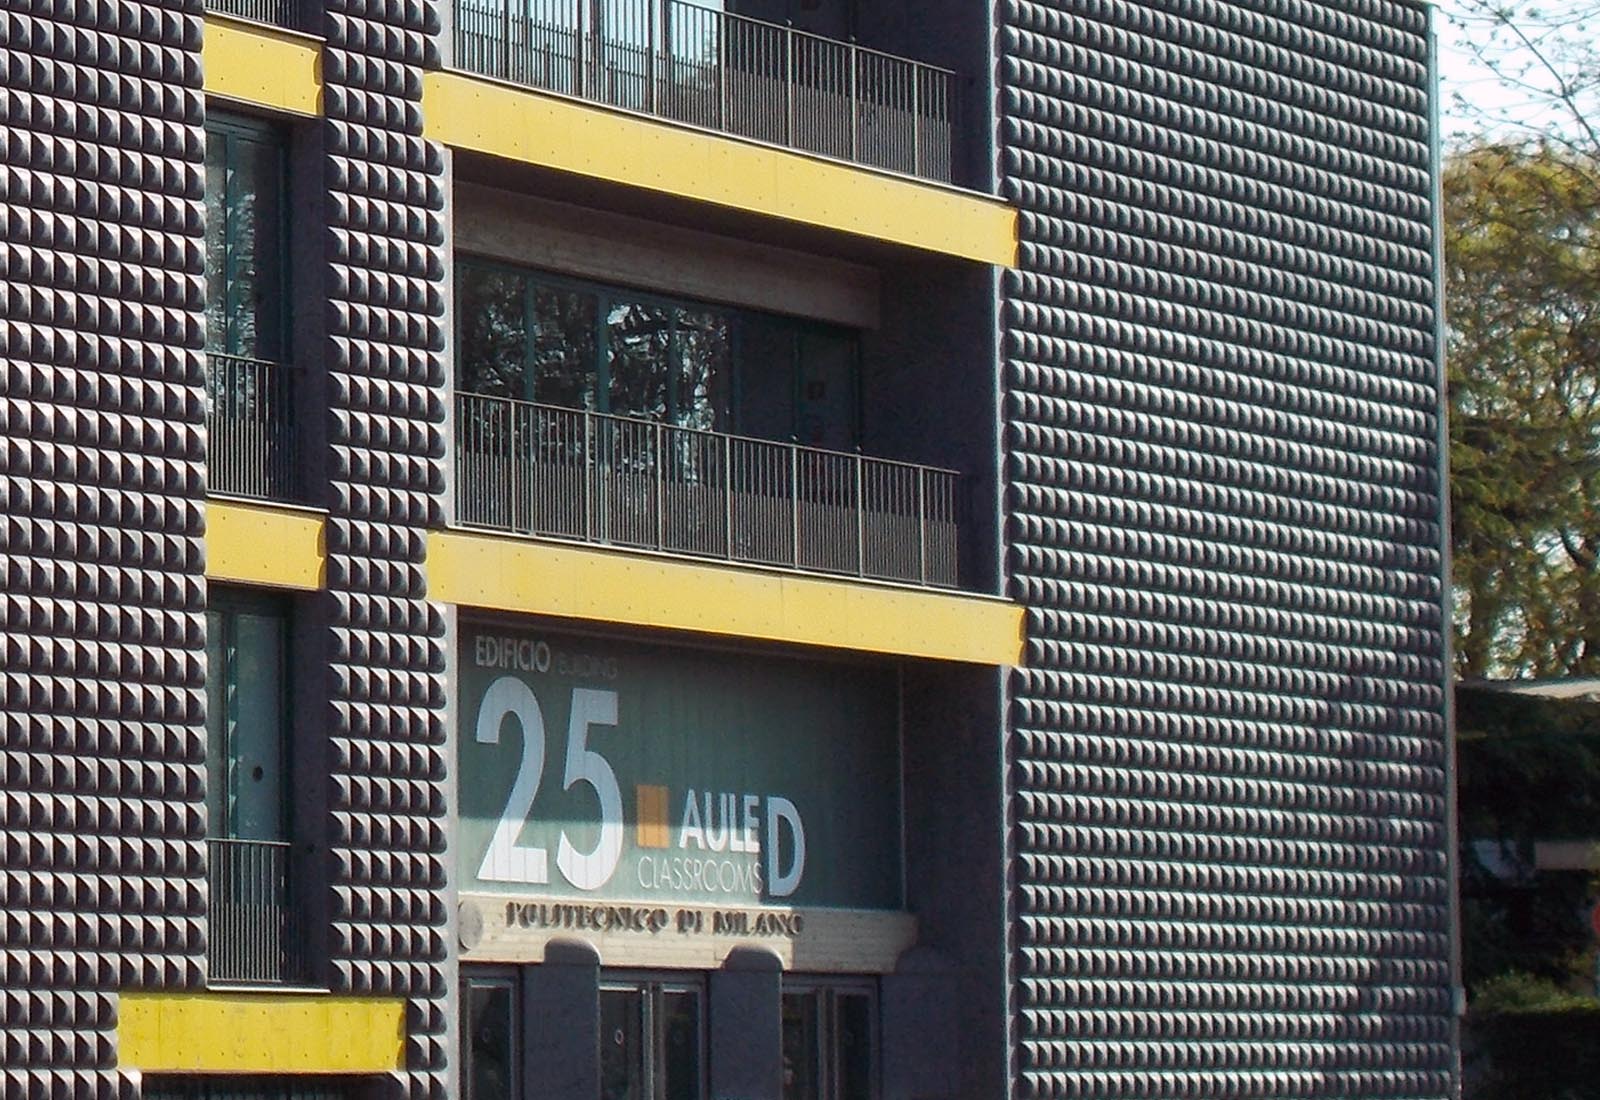 Edificio 25 Politecnico di Milano - Dettaglio del fronte sud